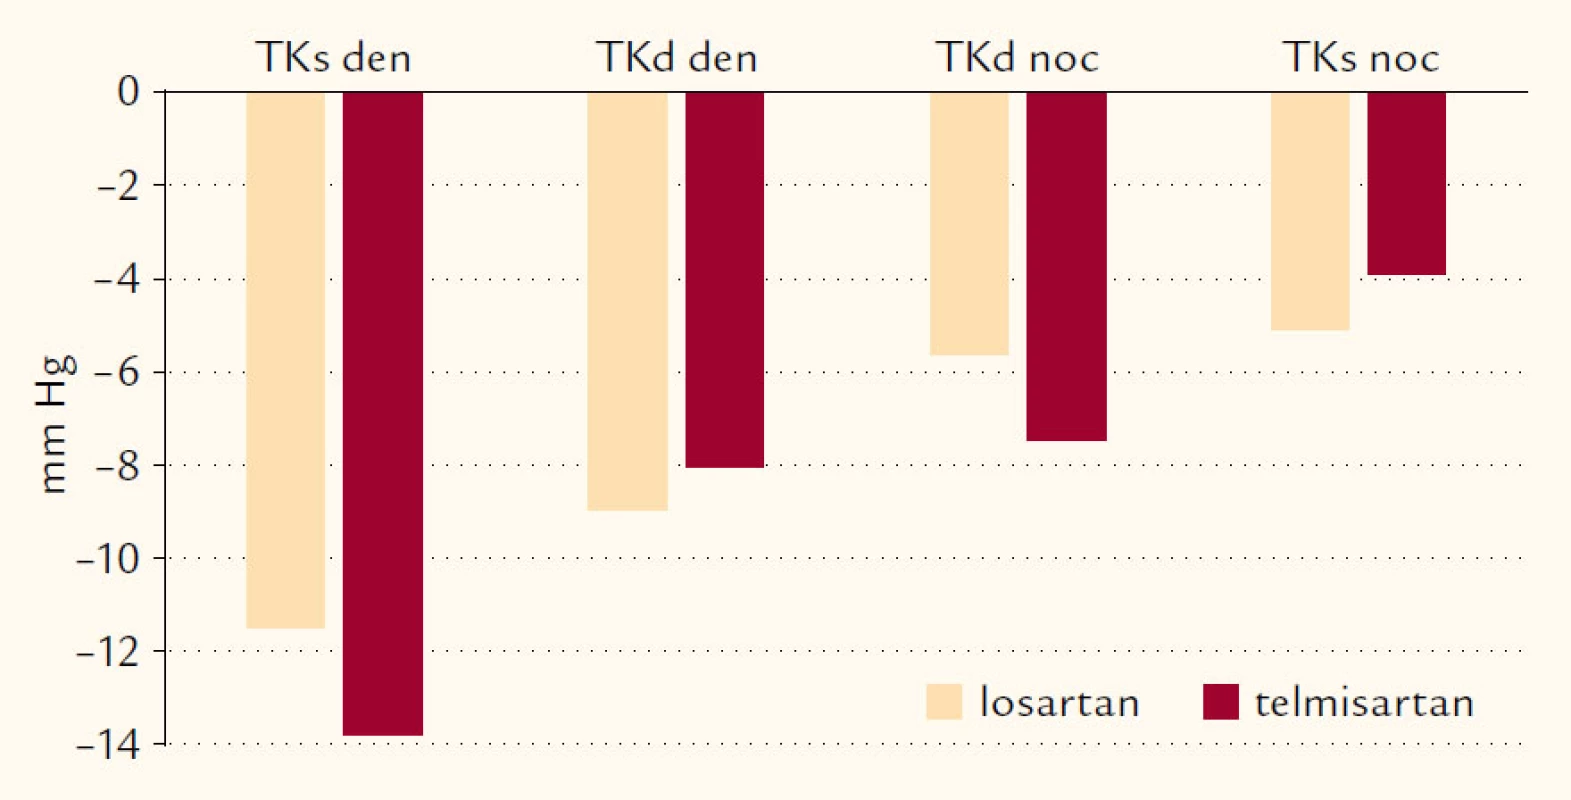 Průměrné změny TKs a TKd (v mm Hg) po 1 roce léčby z 24hodinové monitorace TK ve sledovaných skupinách.